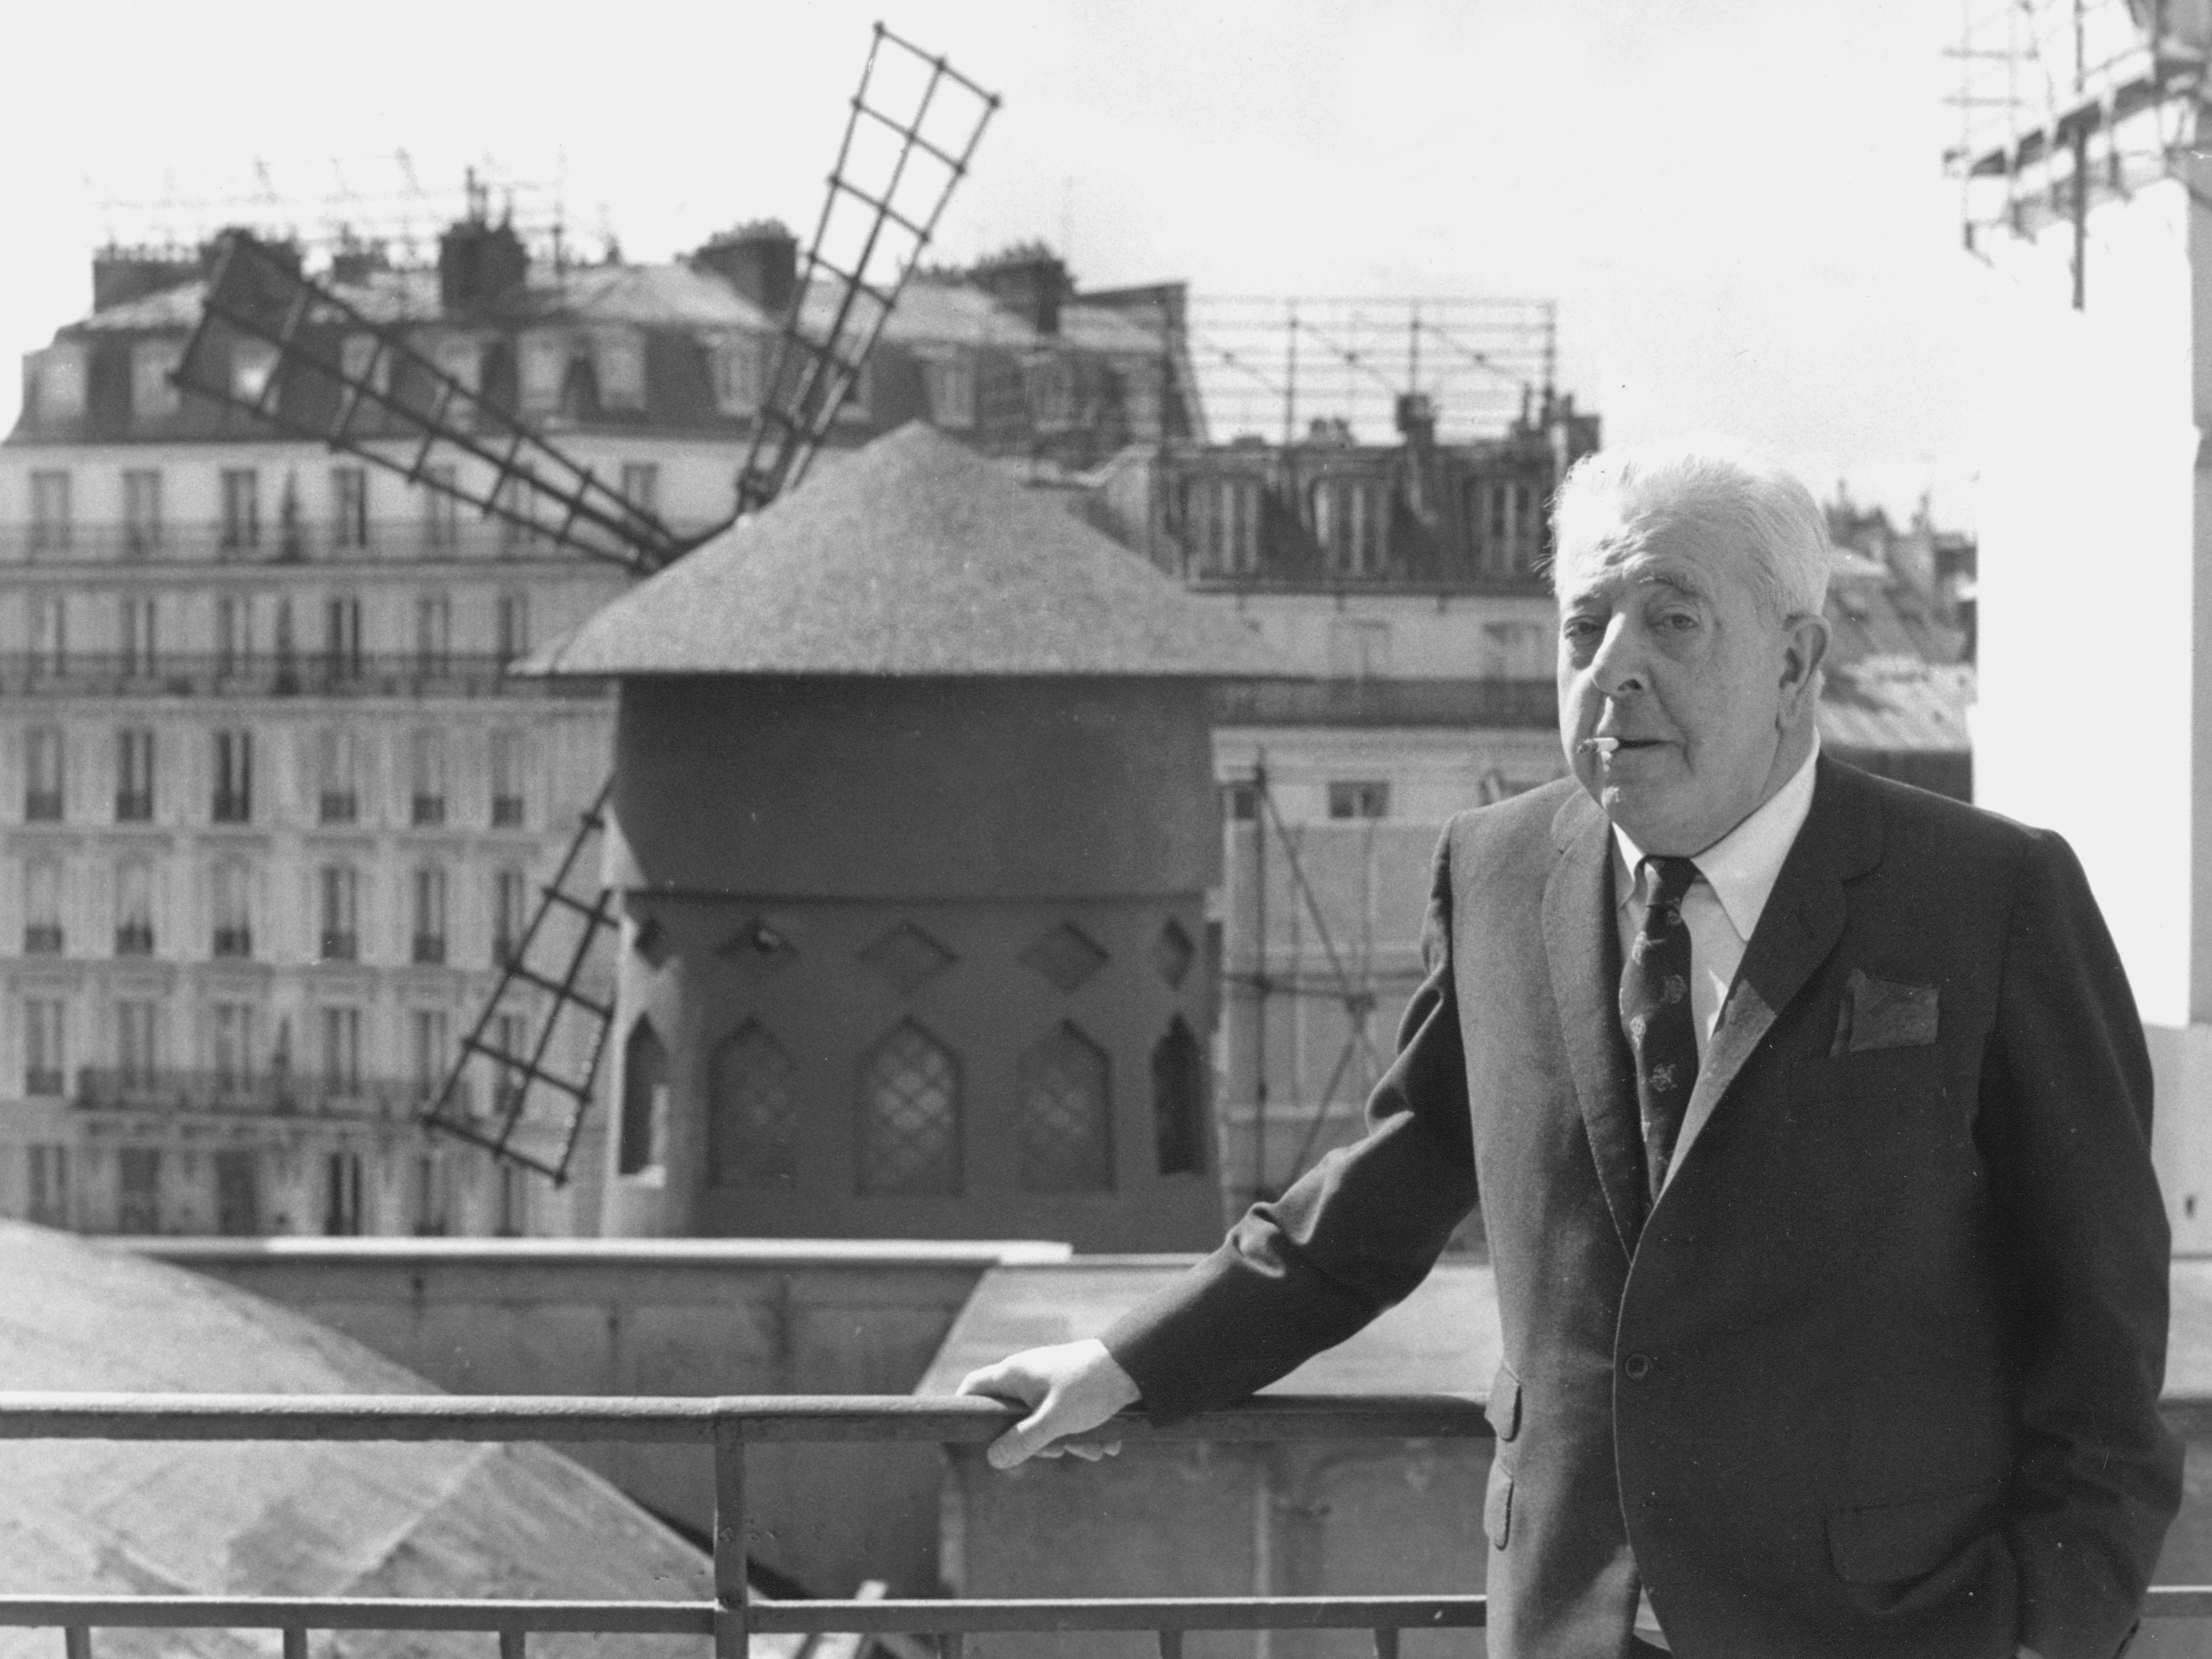 Le poète français Jacques Prévert (1900-1977), dont l'oeuvre a souvent été reprise en chanson, pose devant le Moulin Rouge à Paris, en 1977. [Getty Images - Keystone/Hulton Archive]